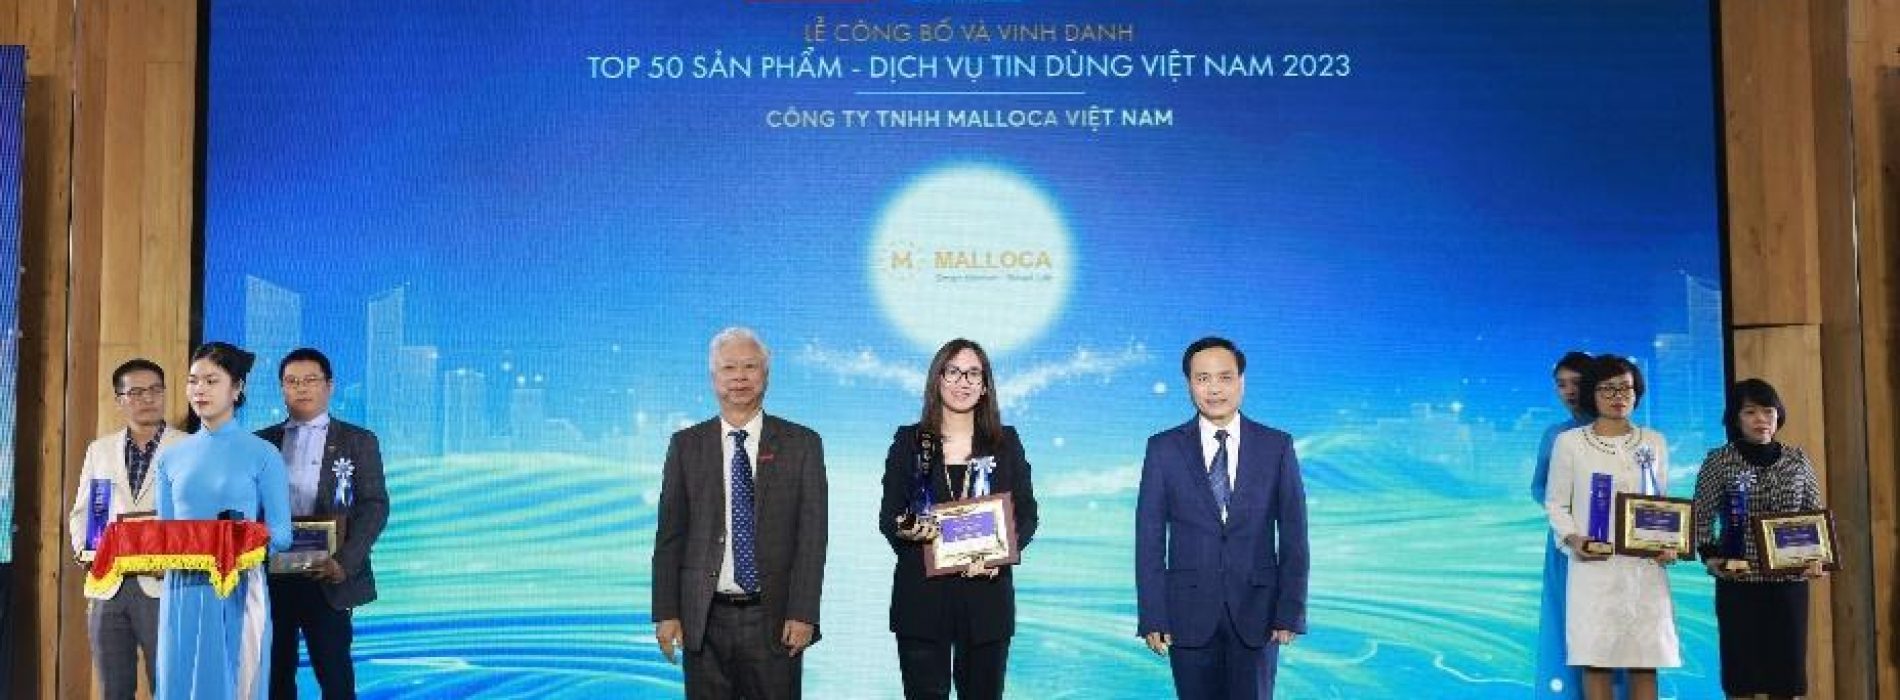 MALLOCA ĐƯỢC VINH DANH TOP 50 SẢN PHẨM – DỊCH VỤ TIN DÙNG VIỆT NAM 2023